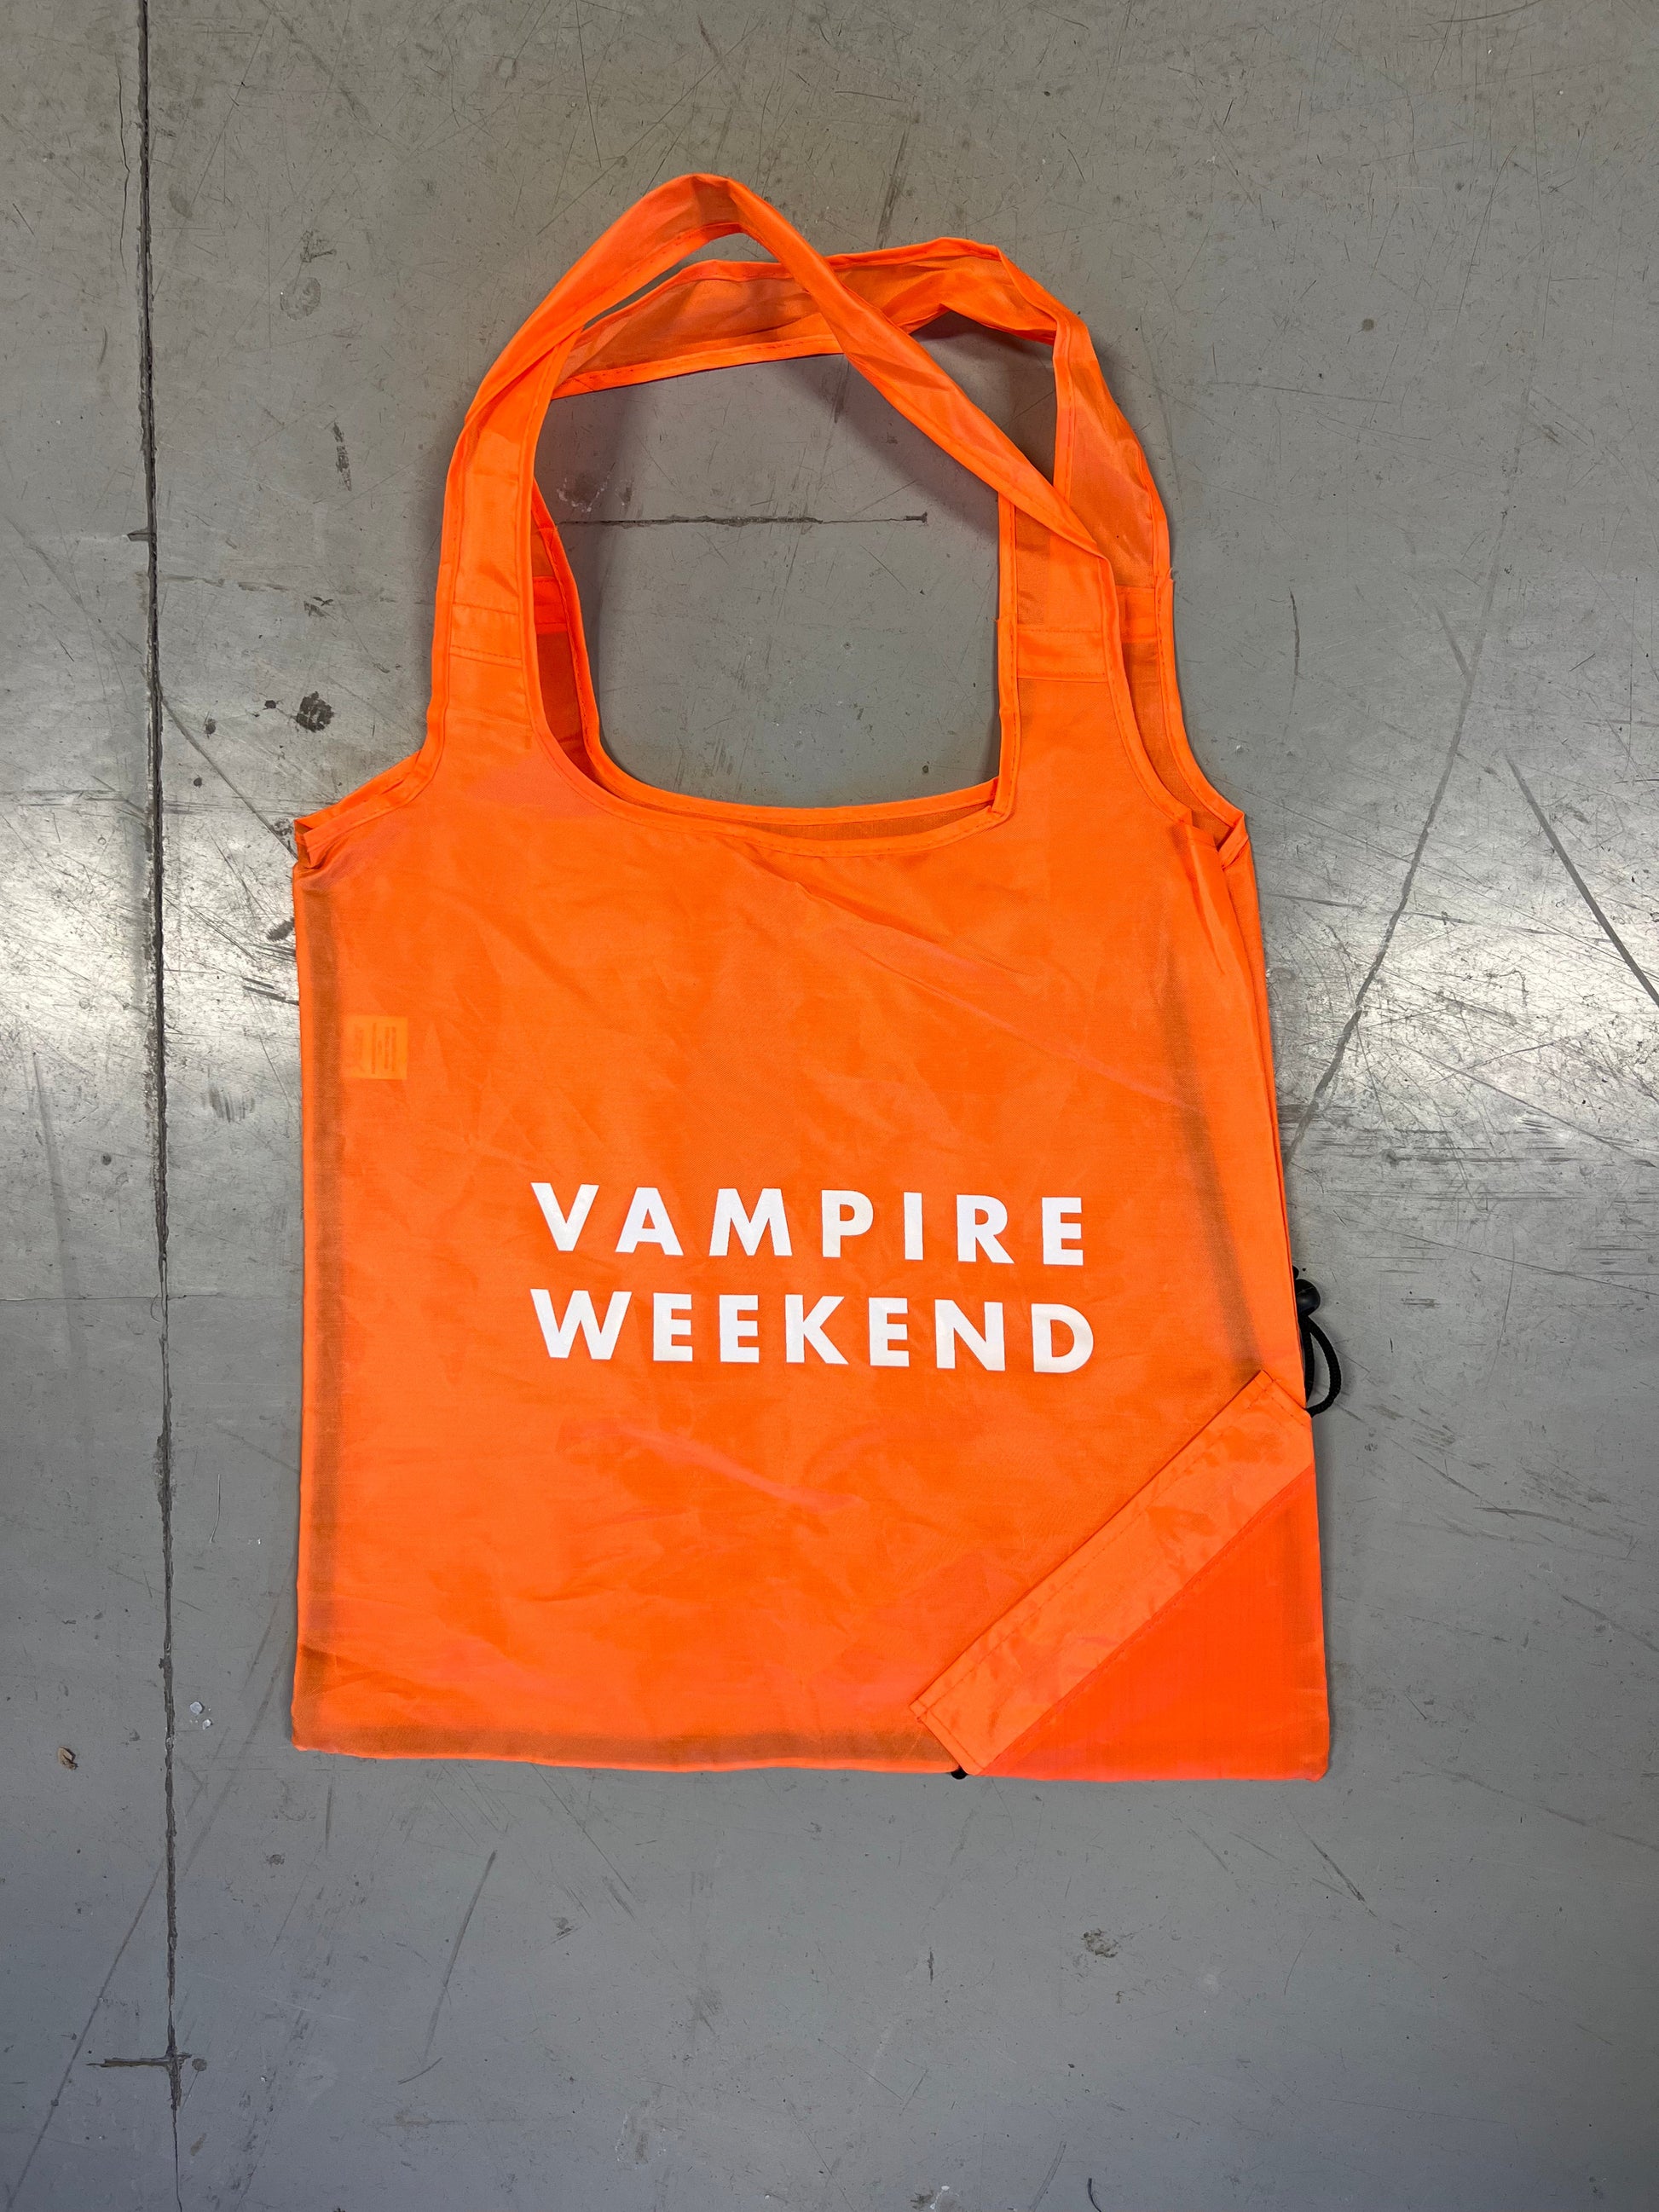 Vampire weekend tote in orange